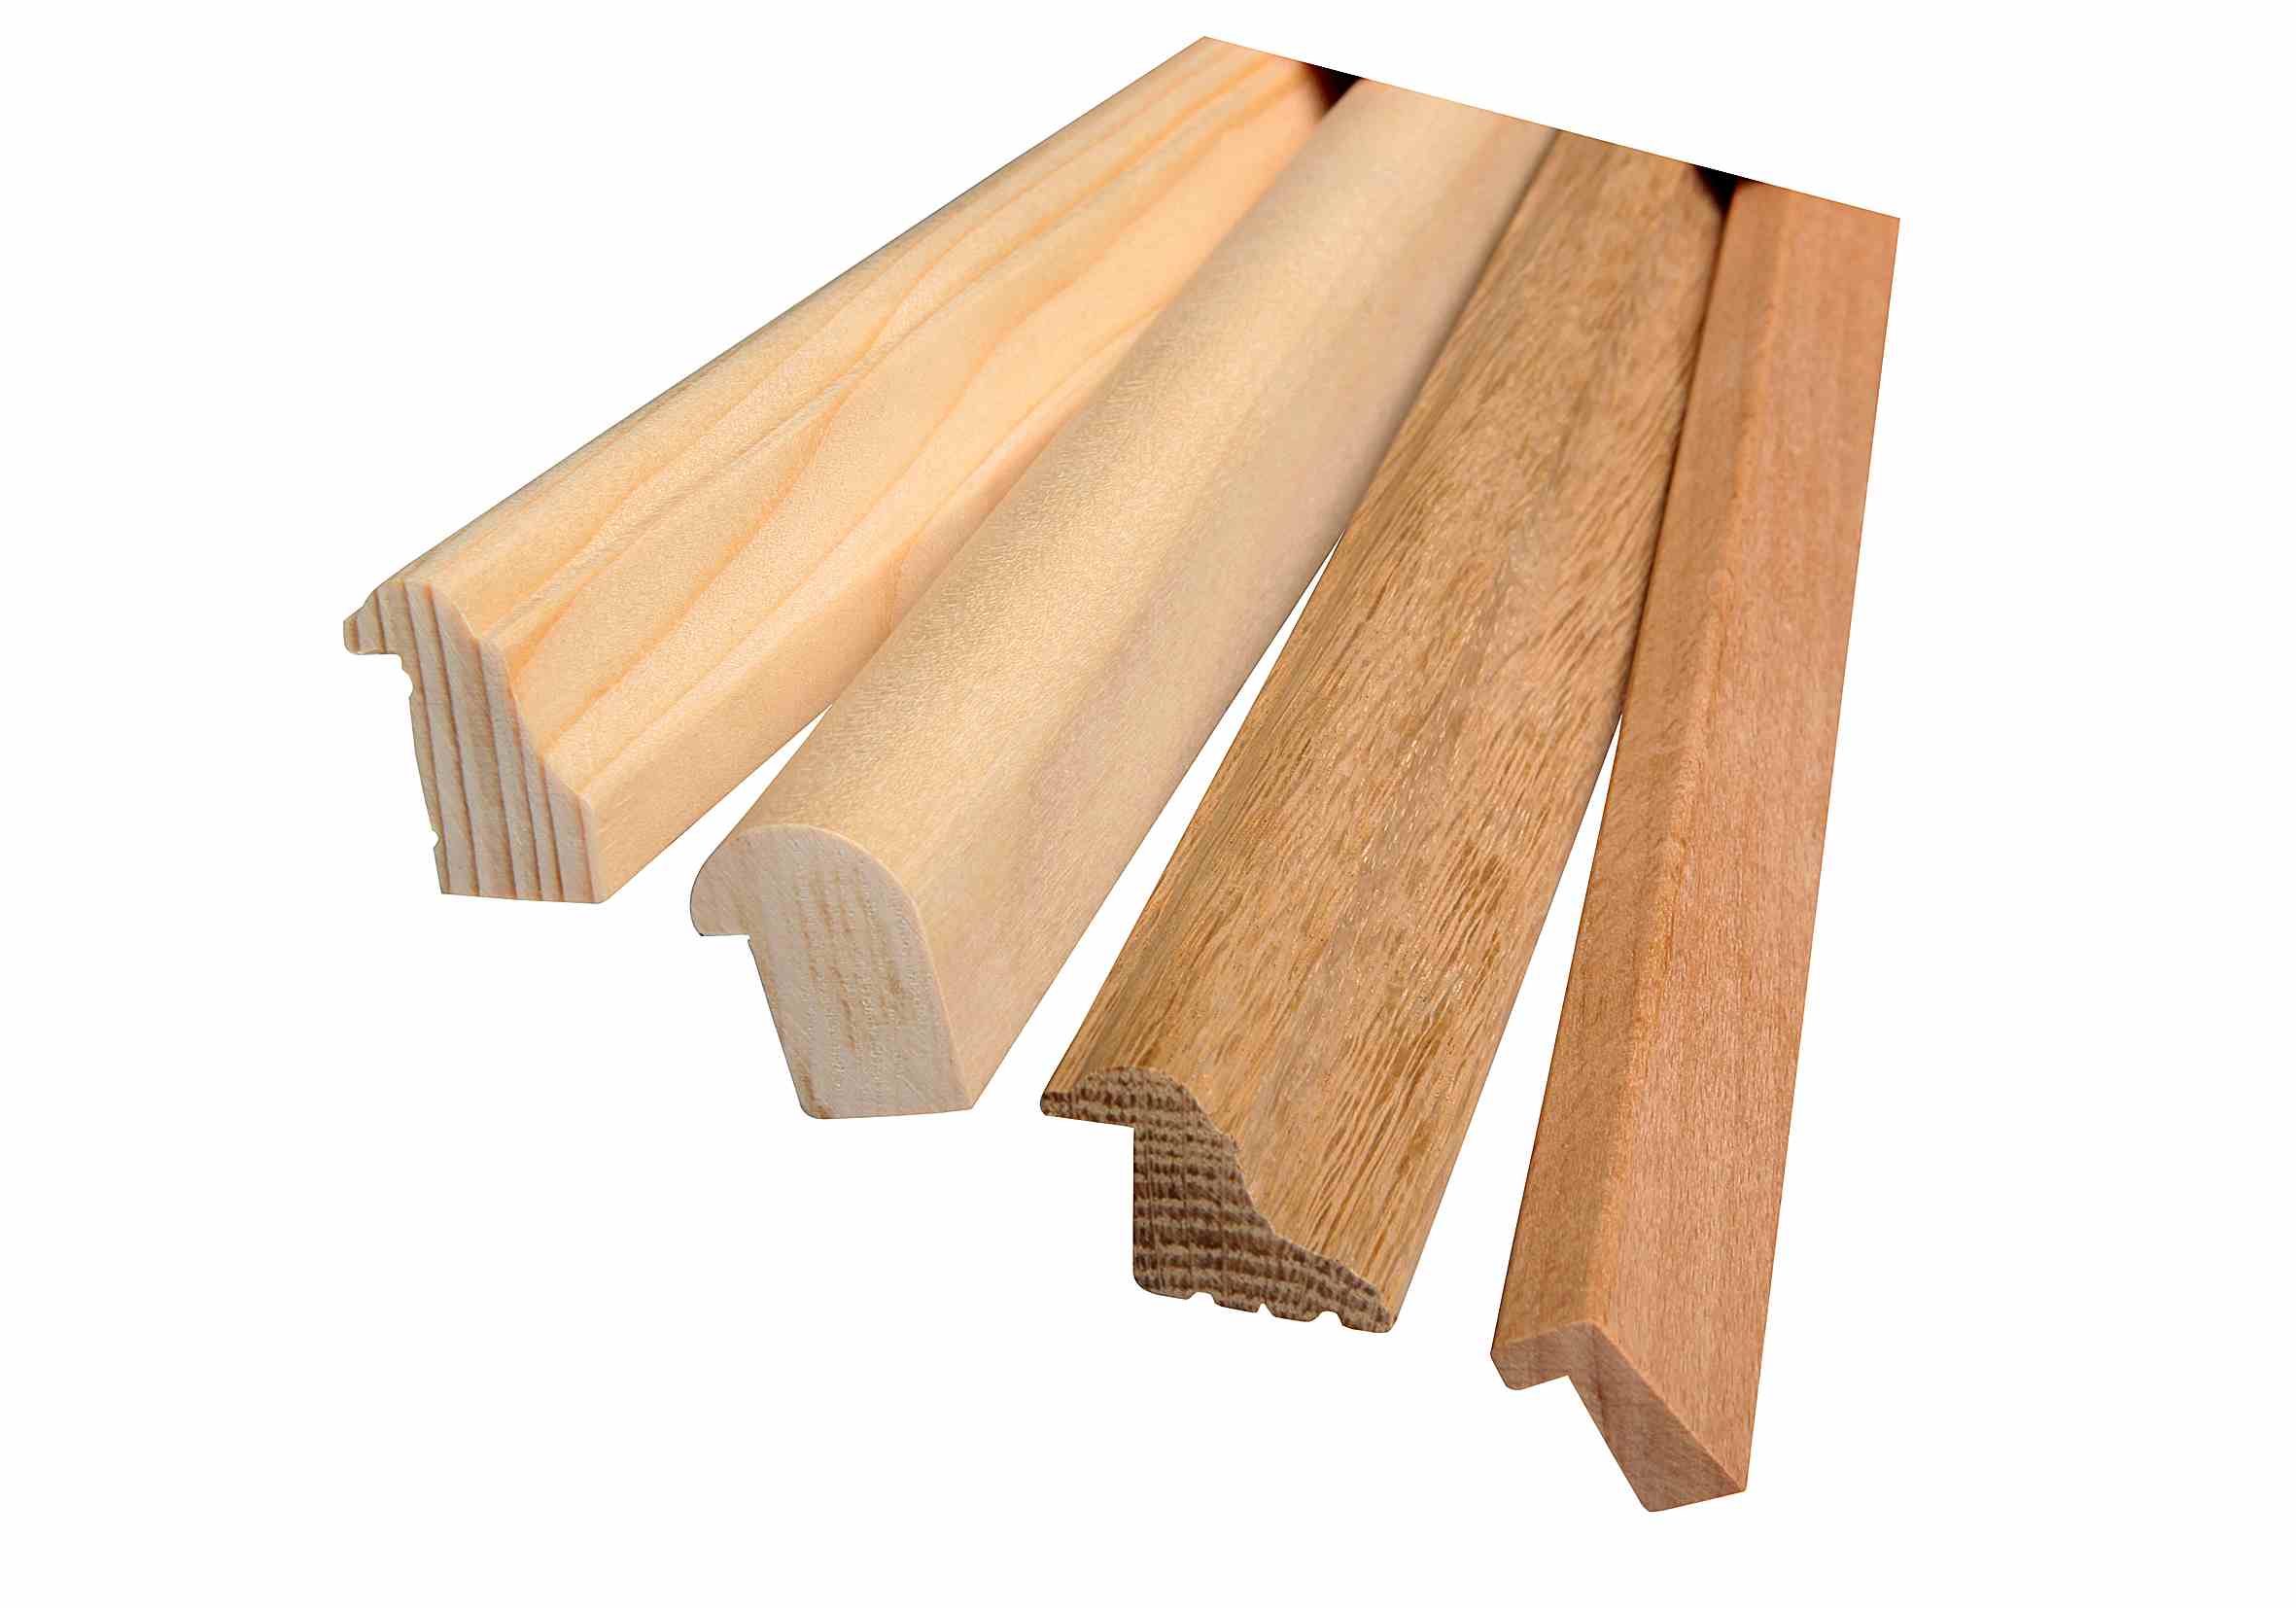 bohatá nabídka dřevěných lišt